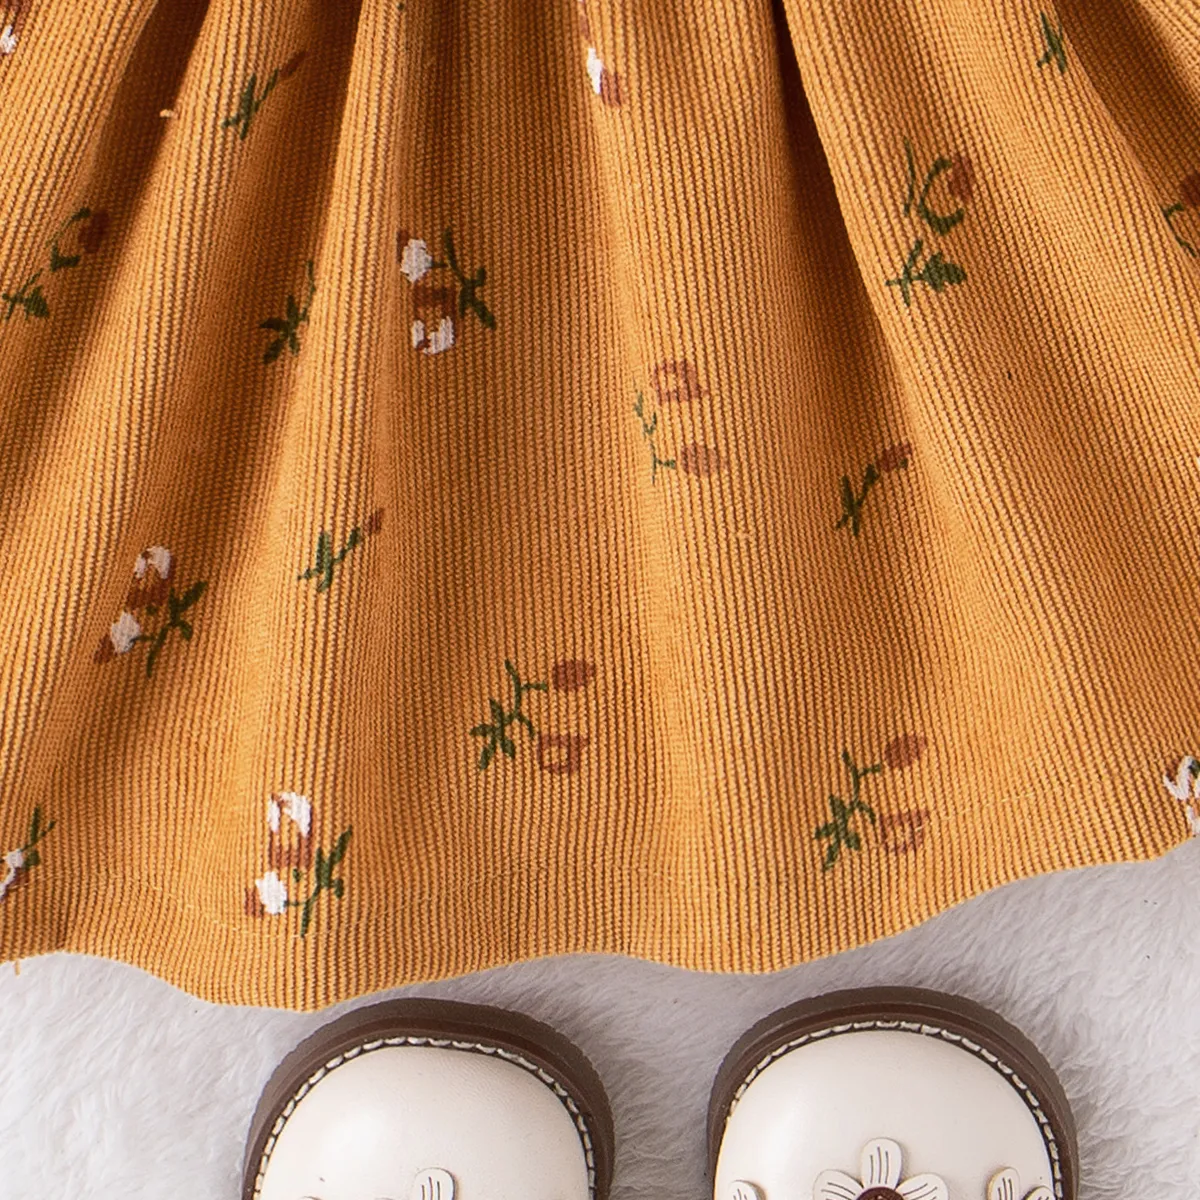 2件 嬰兒 立體造型 優雅 長袖 連衣裙 薑黃色 big image 1